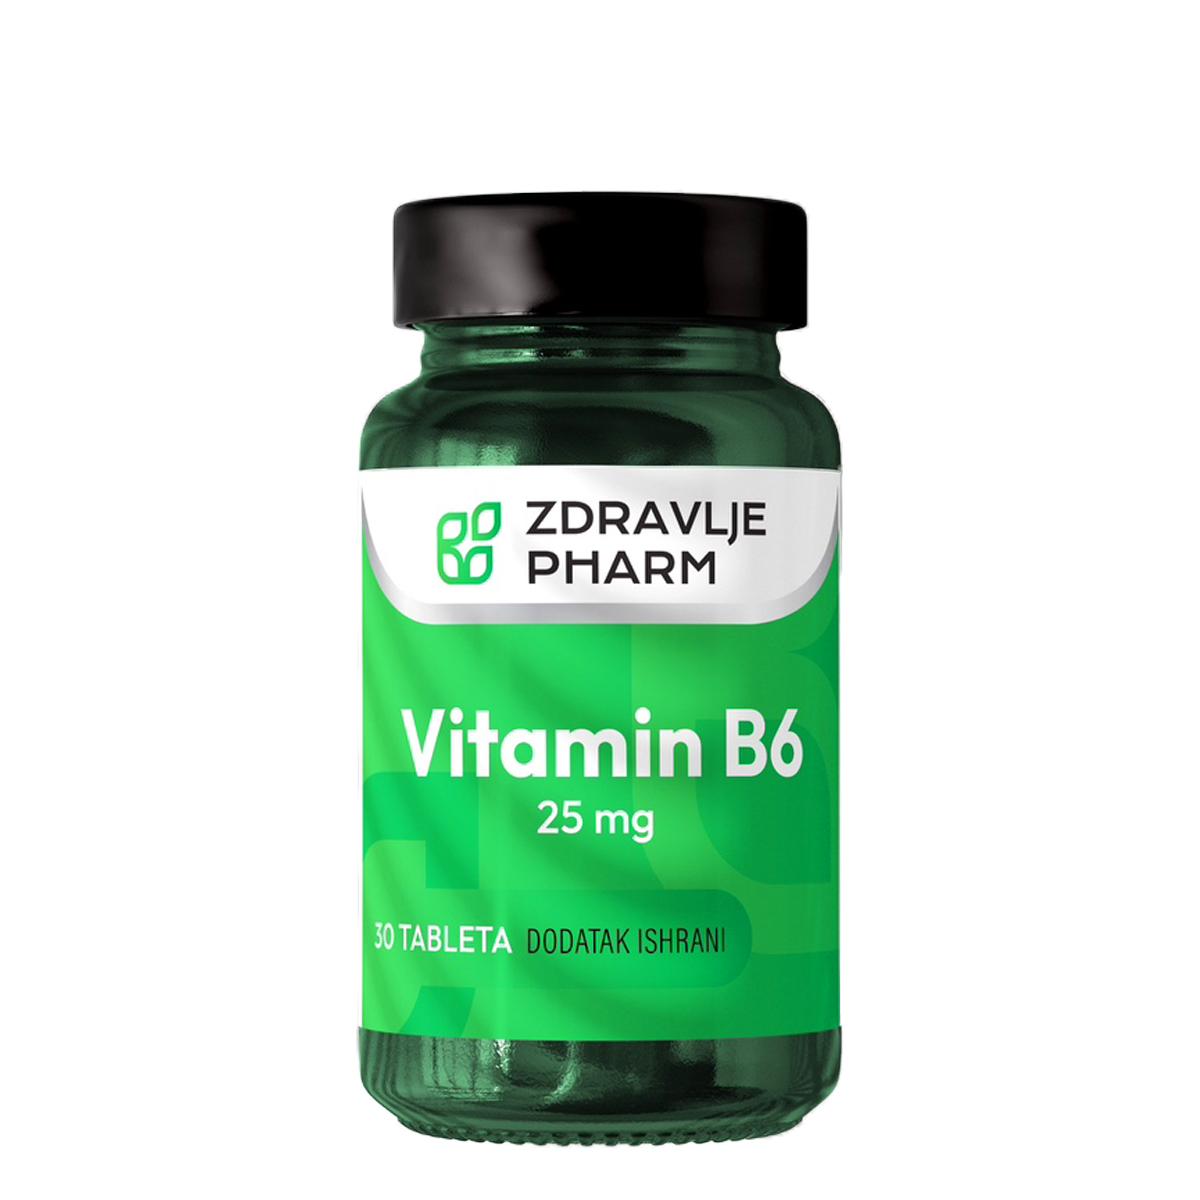 Selected image for ZDRAVLJE PHARM Vitamin B6 25mg 30 tableta